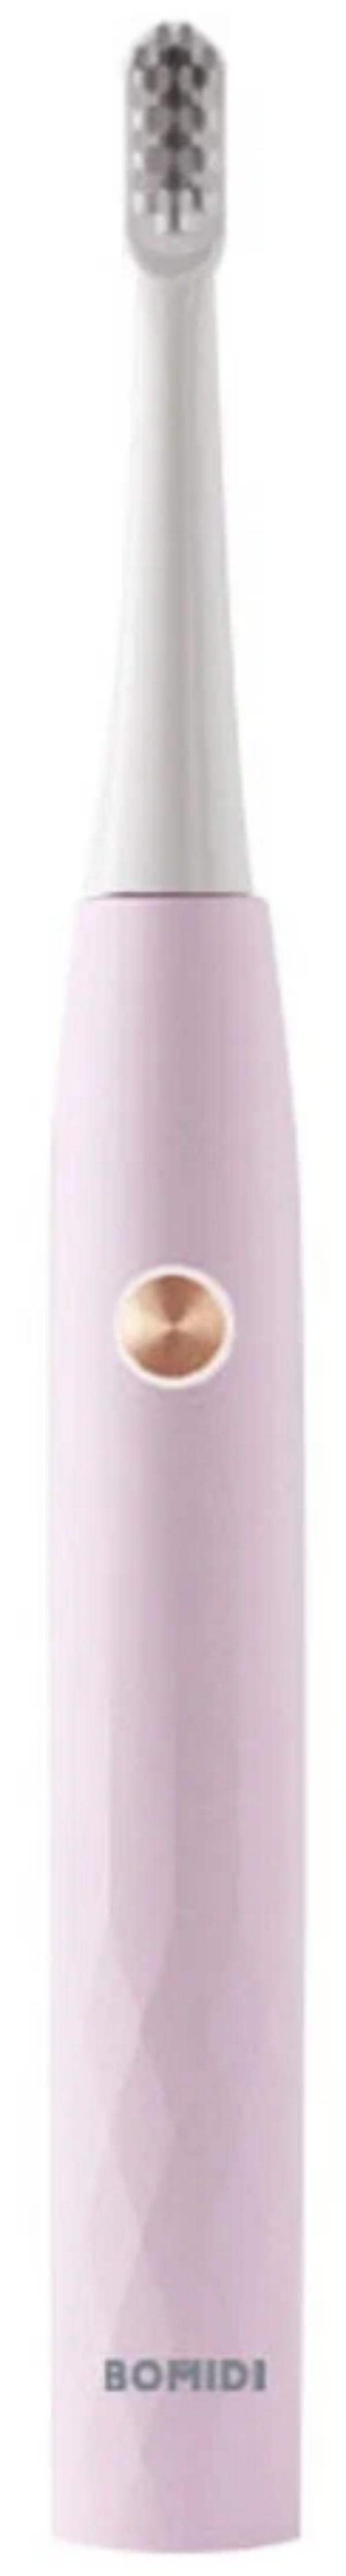 Электрическая зубная щётка BOMIDI T501, розовый